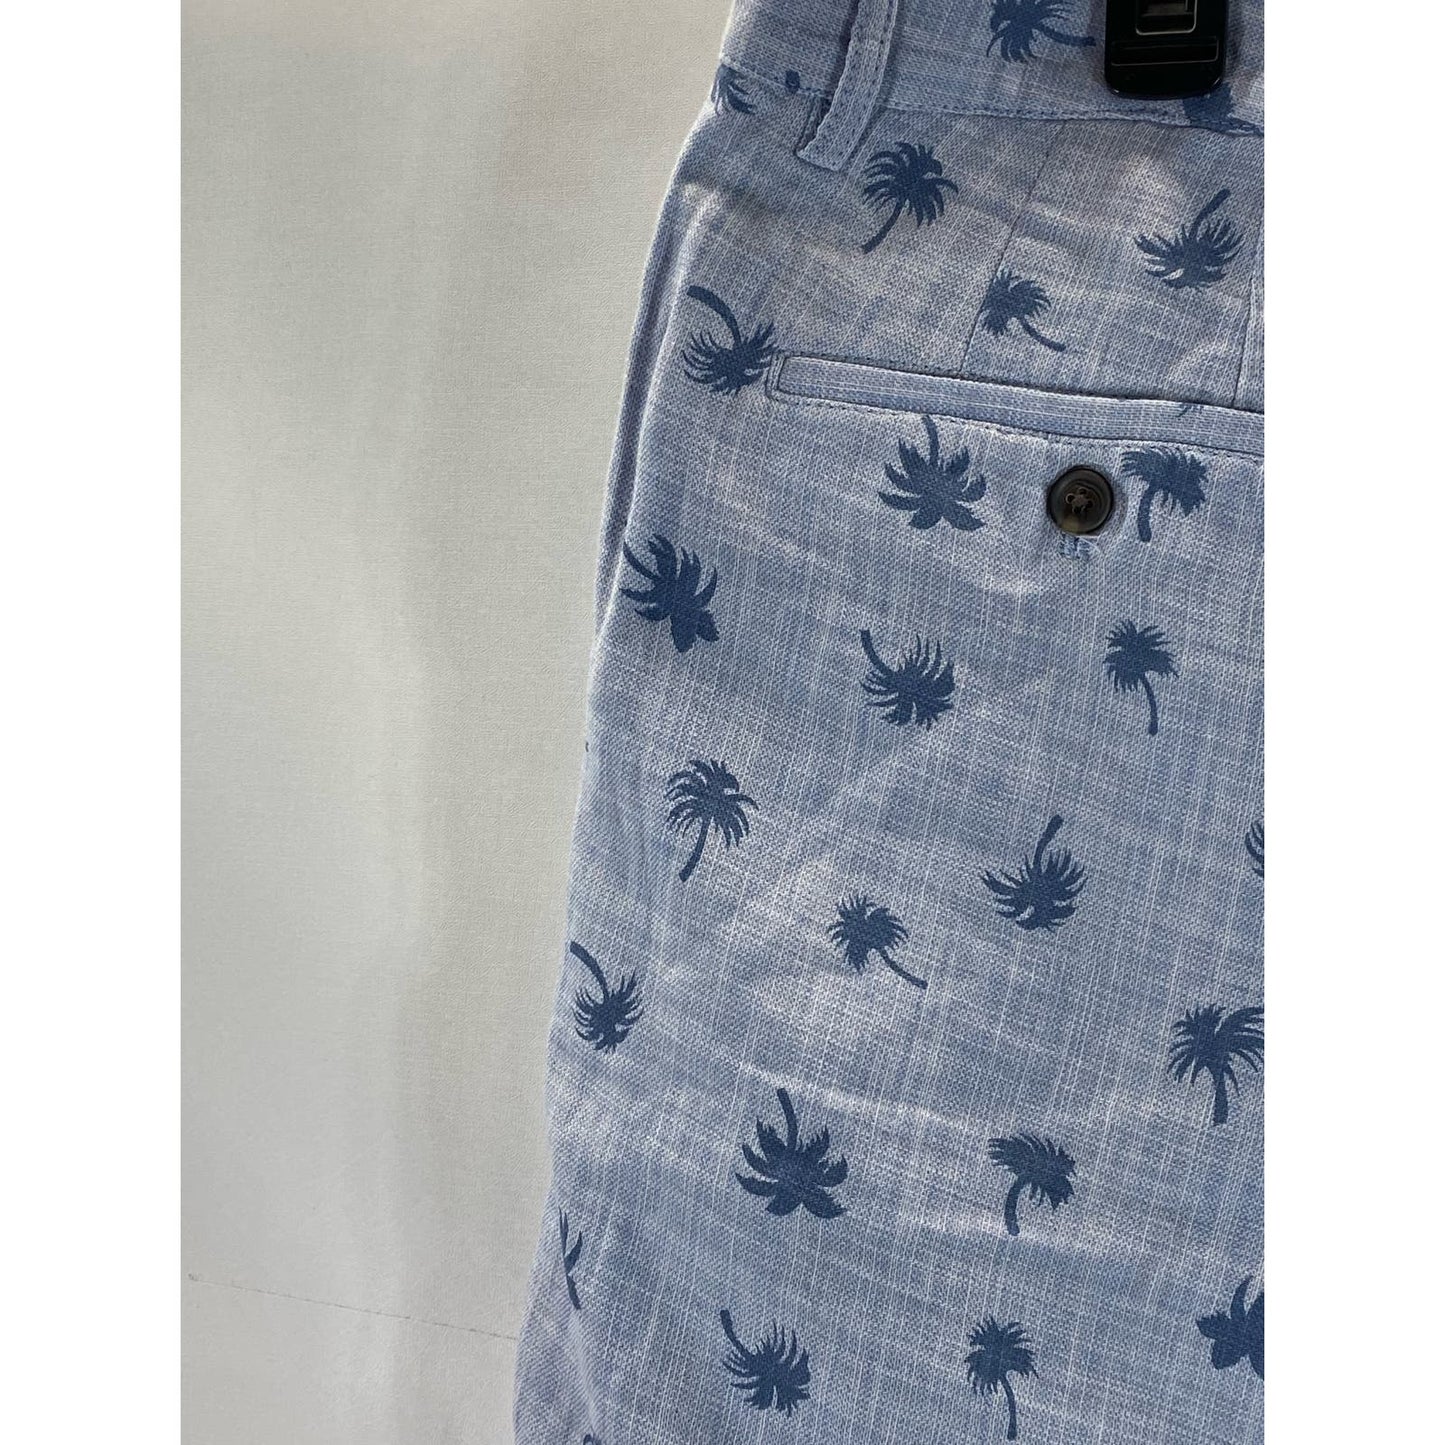 CLUB MONACO Men's Blue Palm Tree Print Maddox-Fit Shorts SZ 34